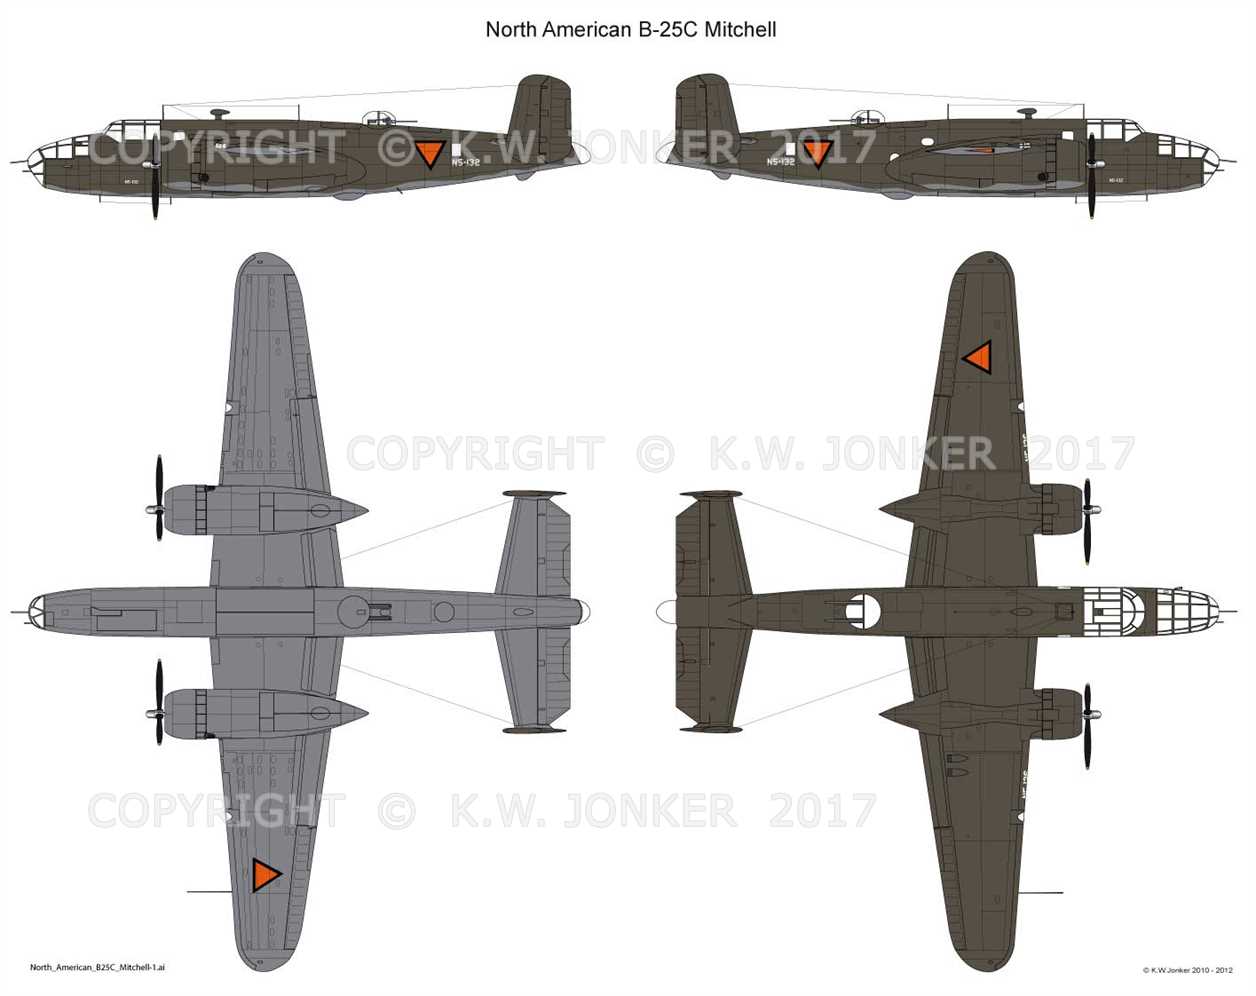 North American B-25 Mitchell vs Boeing 767 Comparison